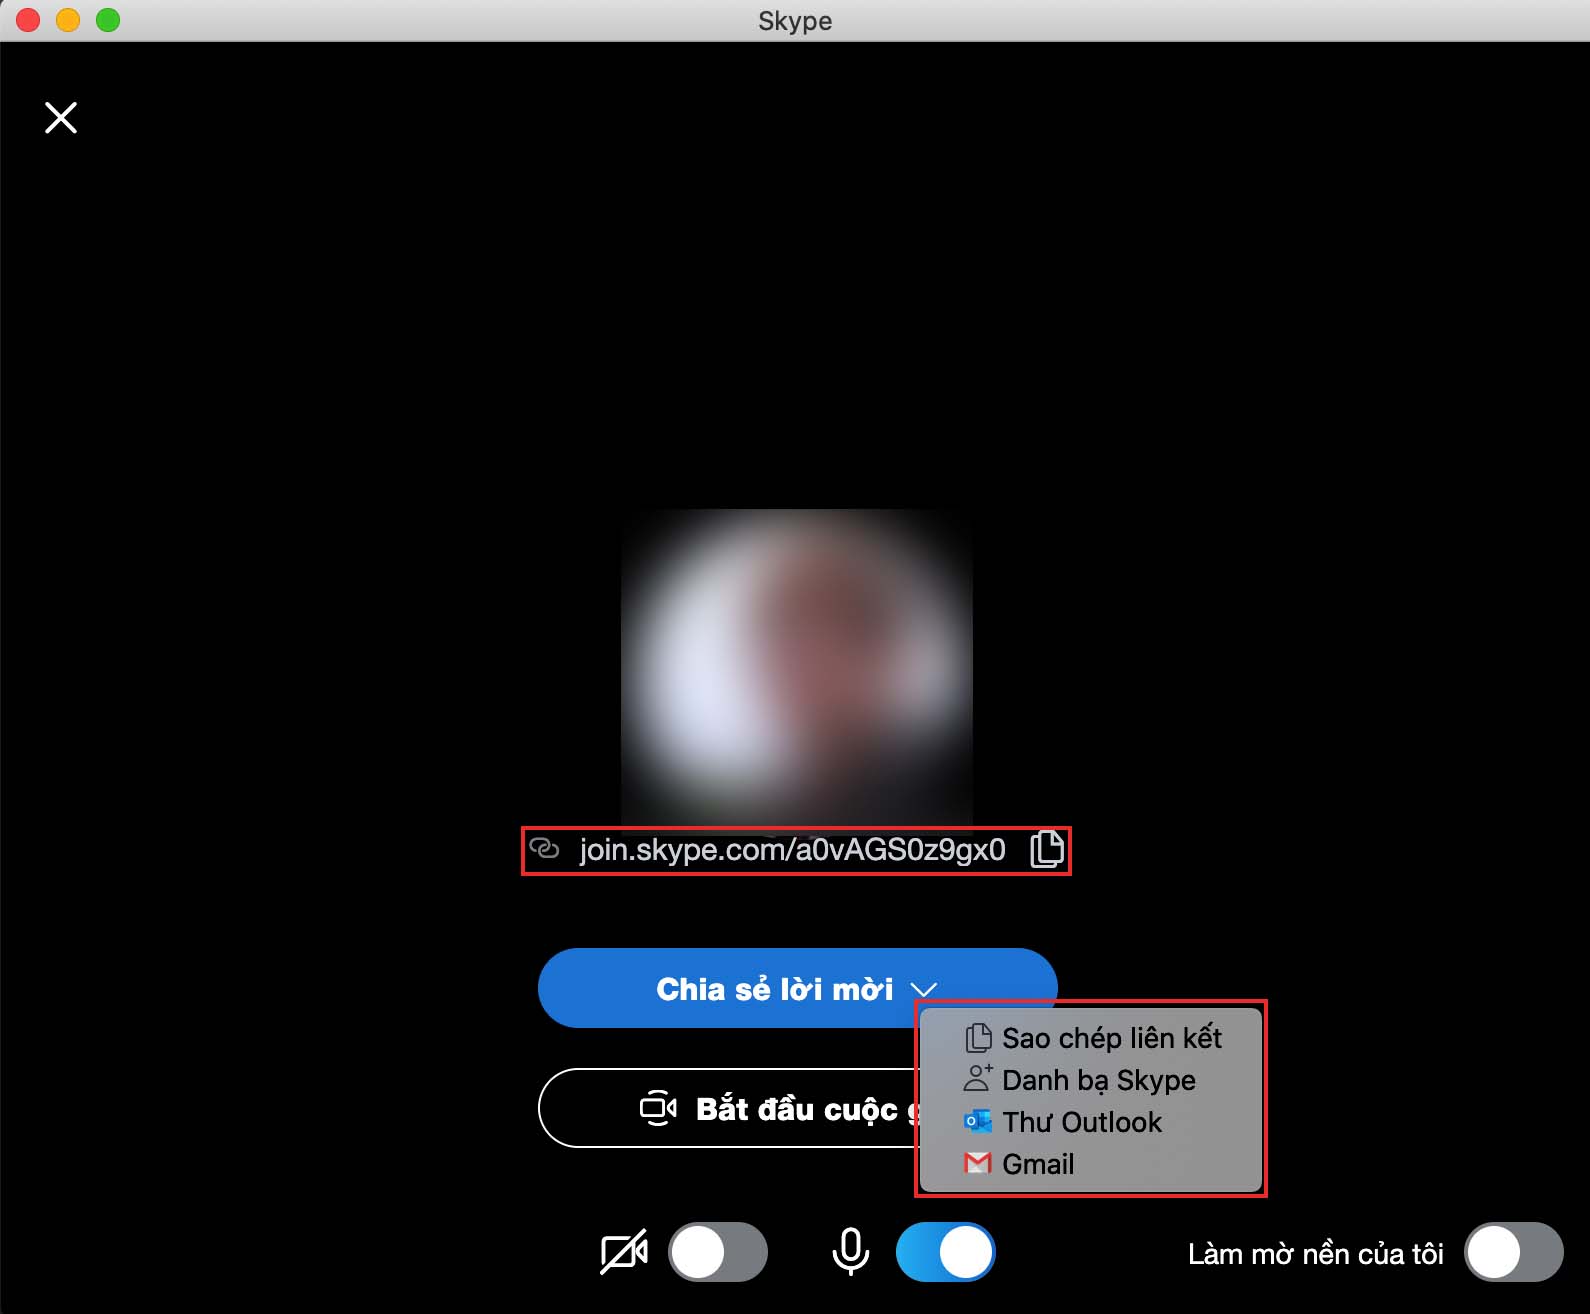 Hướng dẫn chi tiết cách sử dụng Skype để dạy học online - 7